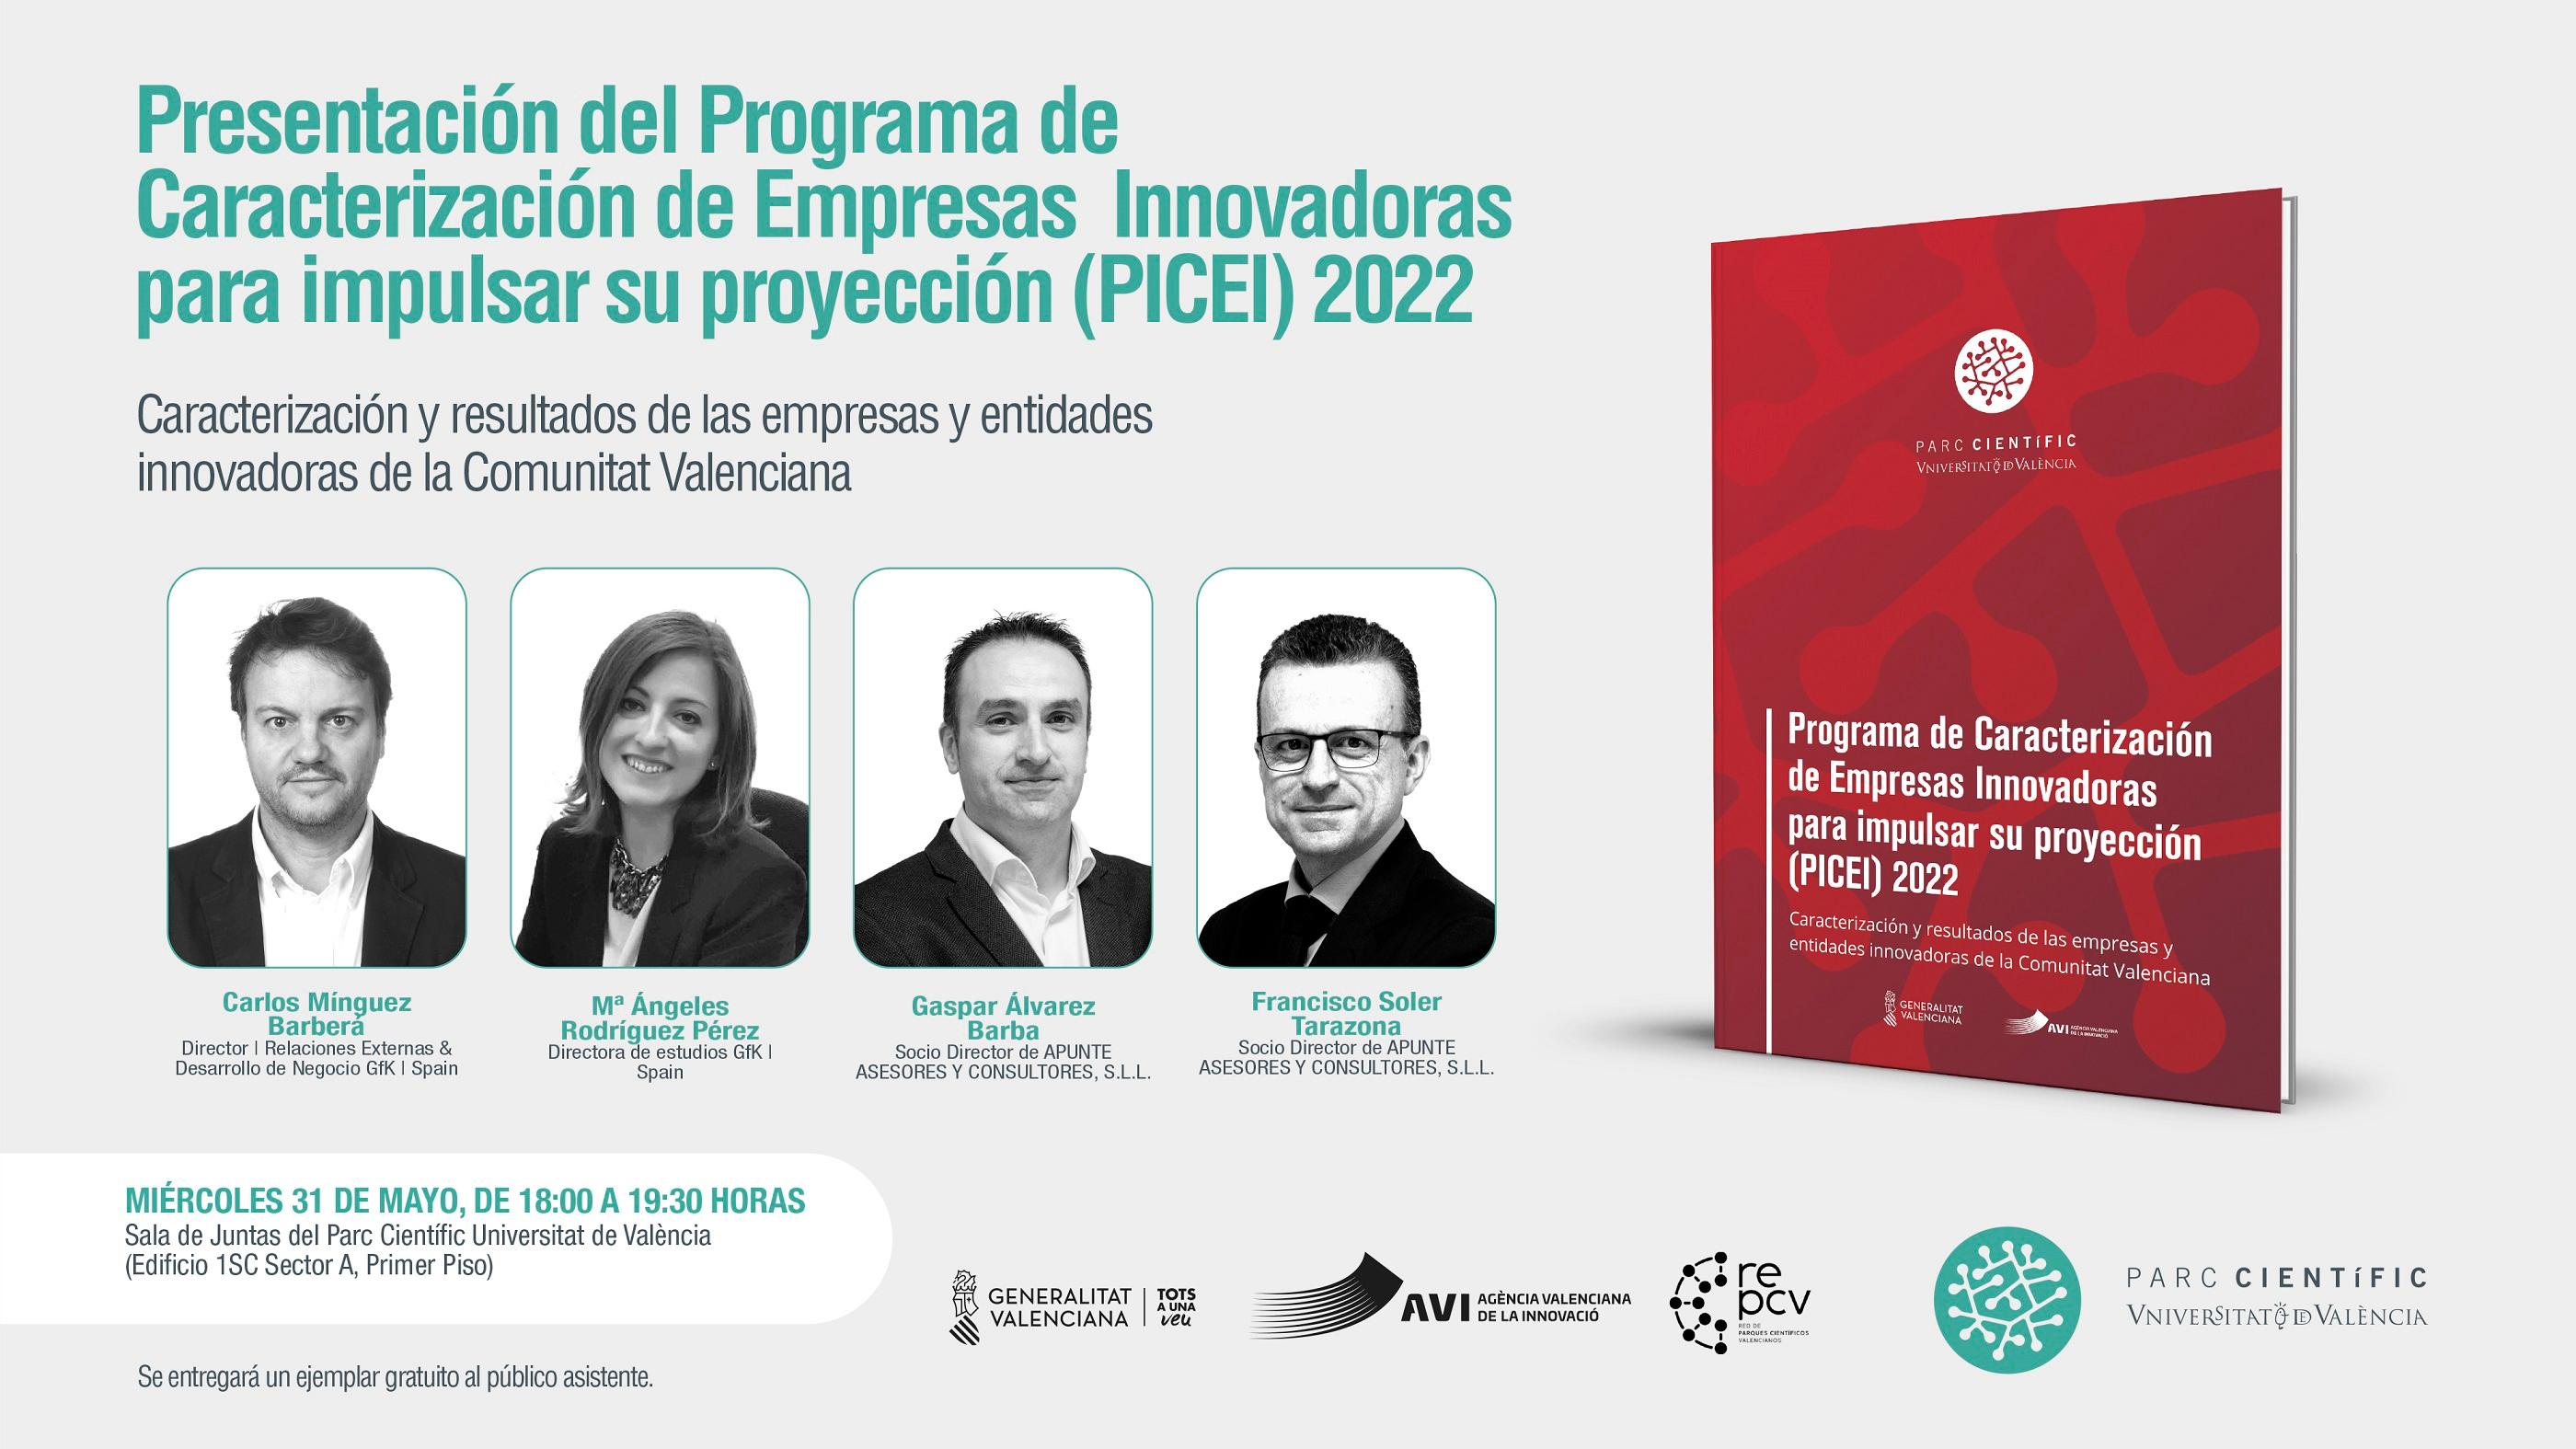 Más grandes, internacionales y jóvenes | Ven a conocer las empresas innovadoras de la Comunitat Valenciana a través del PICEI 2022 